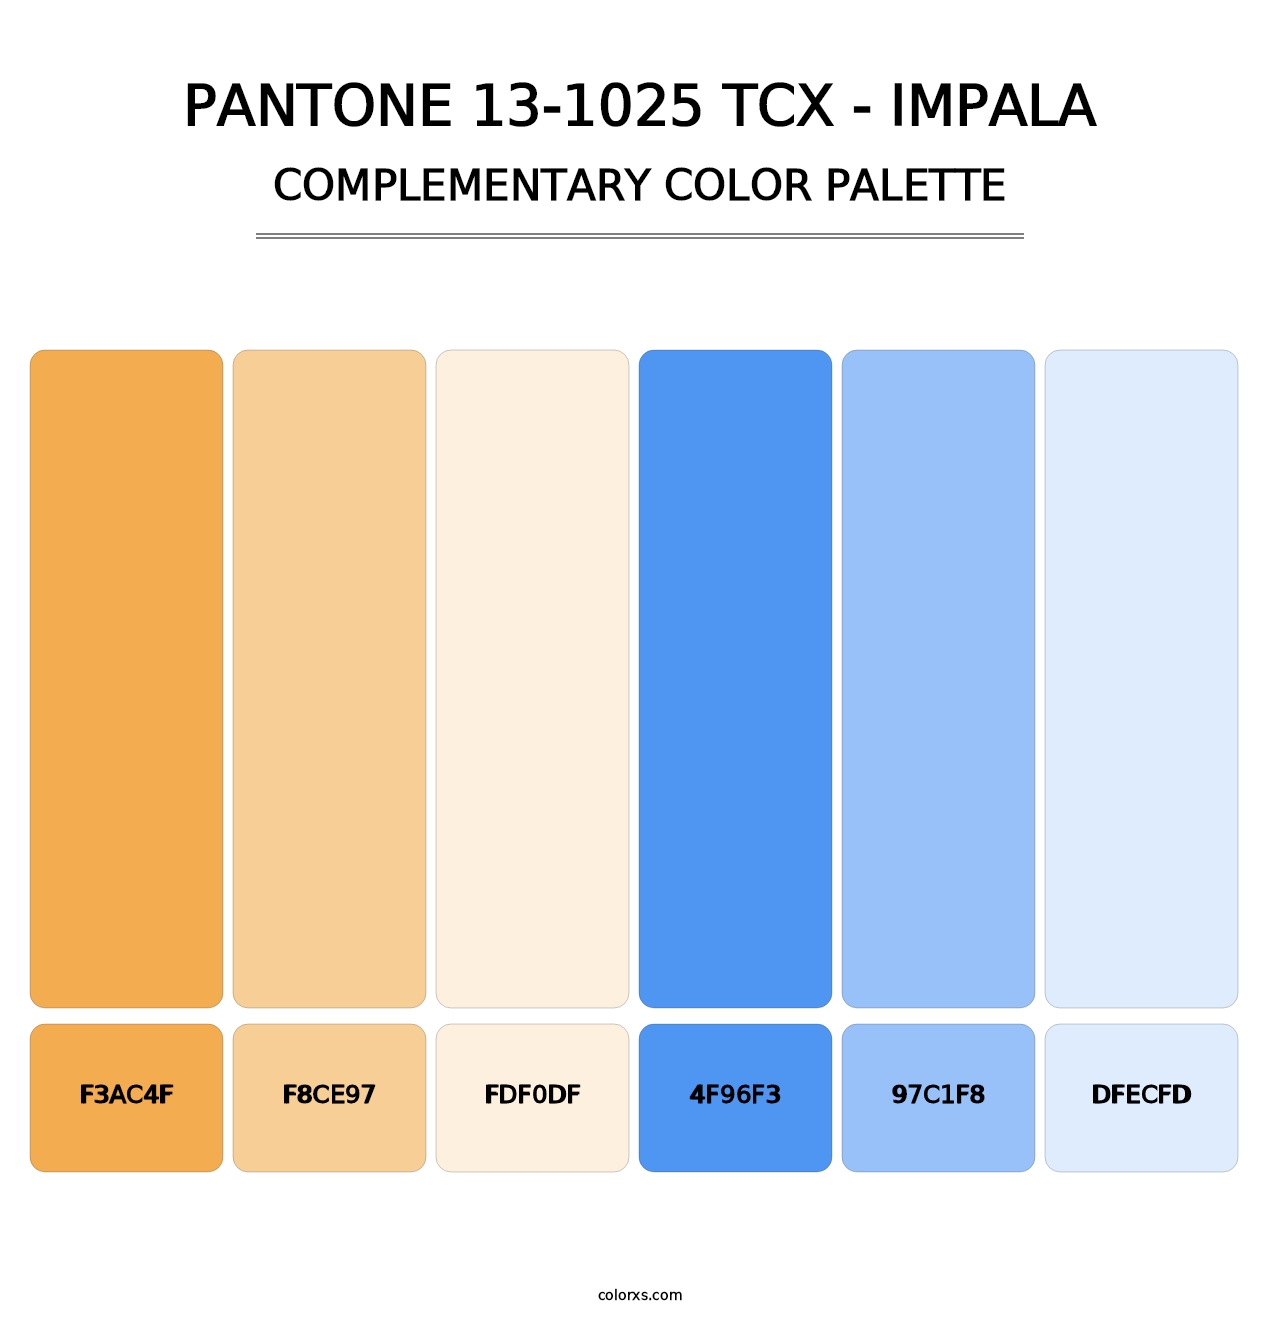 PANTONE 13-1025 TCX - Impala - Complementary Color Palette